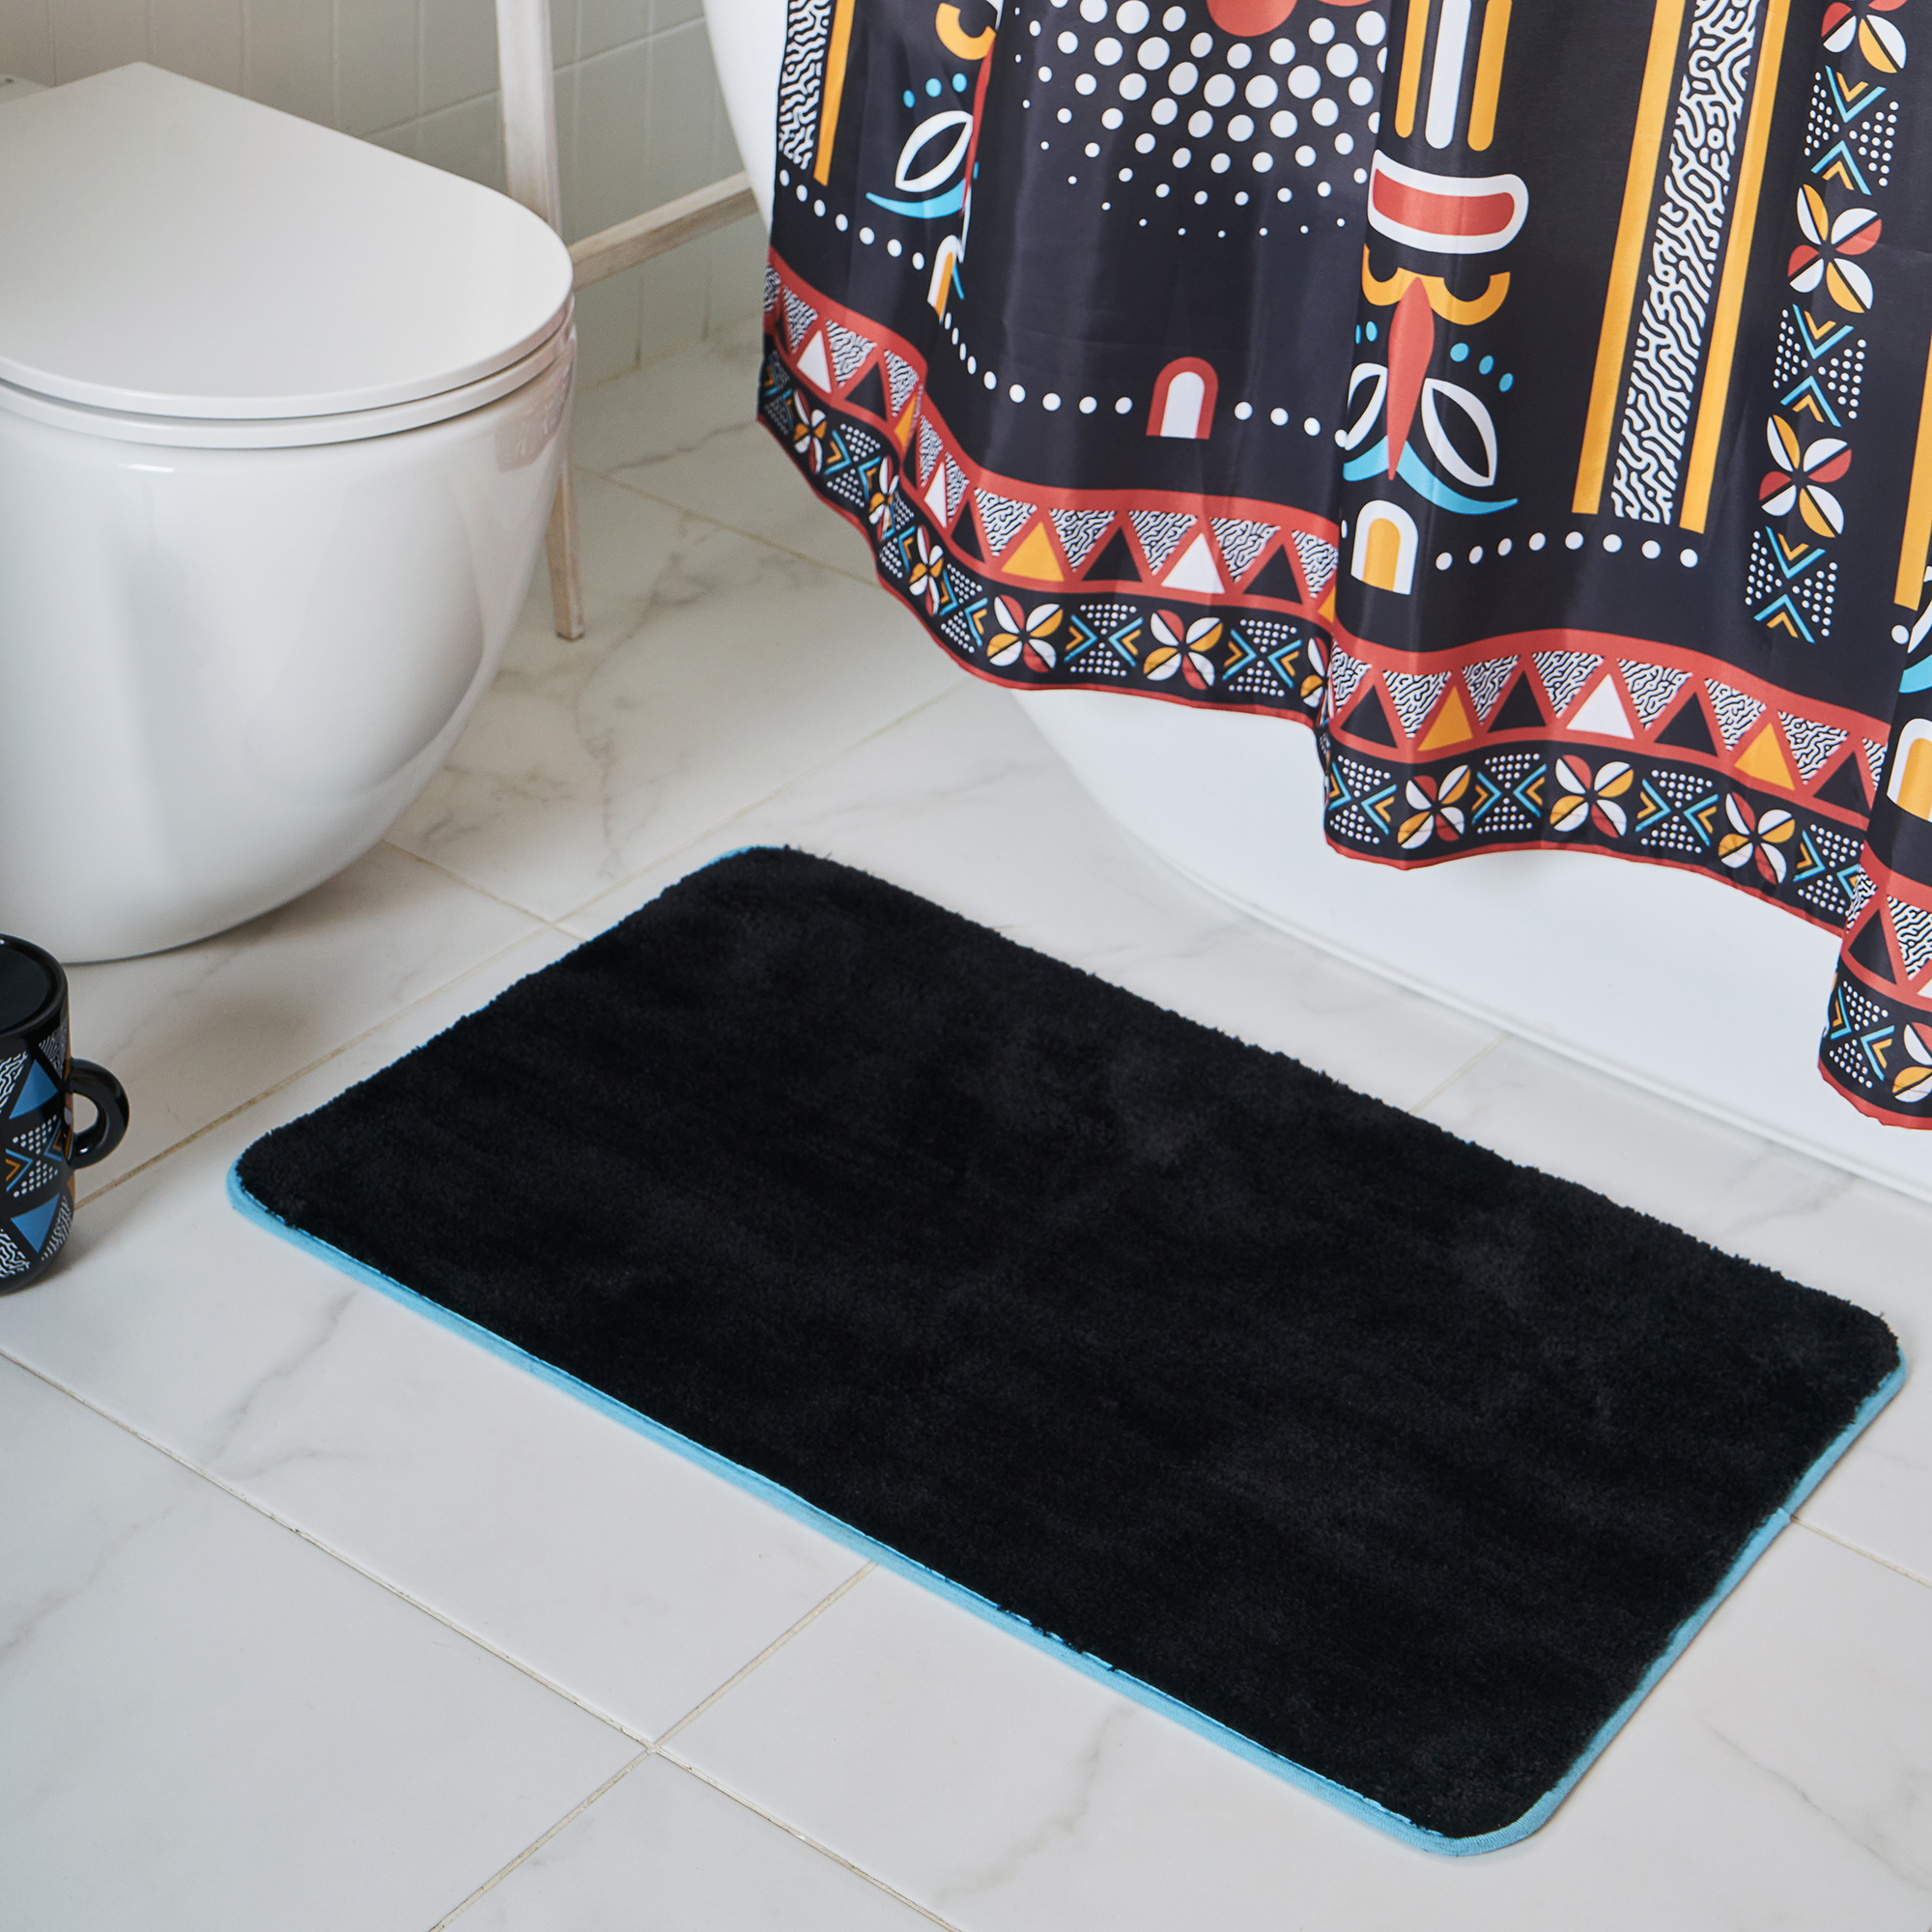 Мягкий коврик Bantu для ванной комнаты 50х80 см., цвет черный